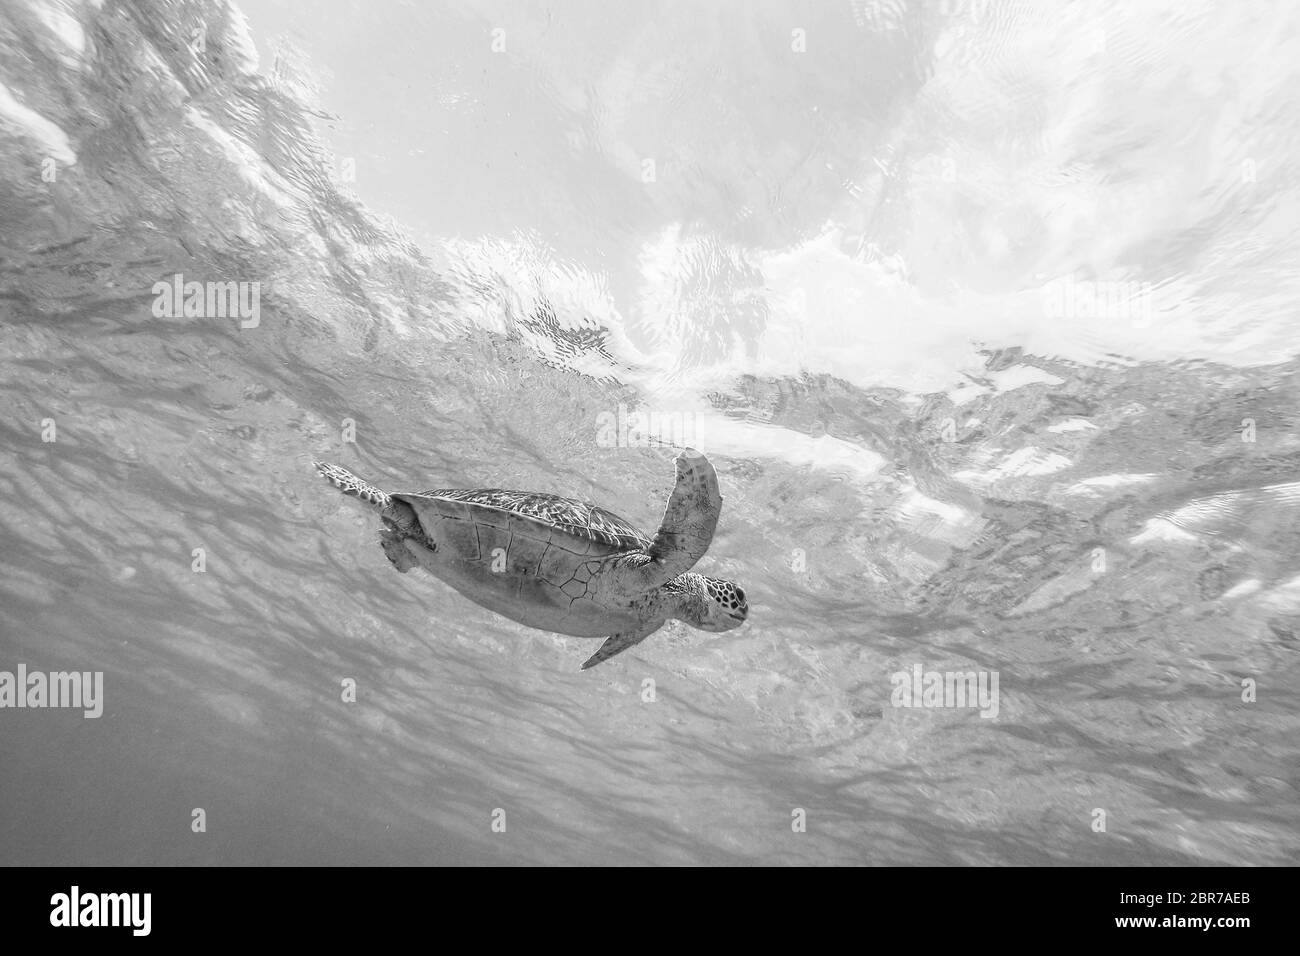 Tortugas marinas nadan libremente en el océano azul. Tortuga carey, Eretmochelys imbricata son especies en peligro de extinción. Imagen en blanco y negro. Foto de stock